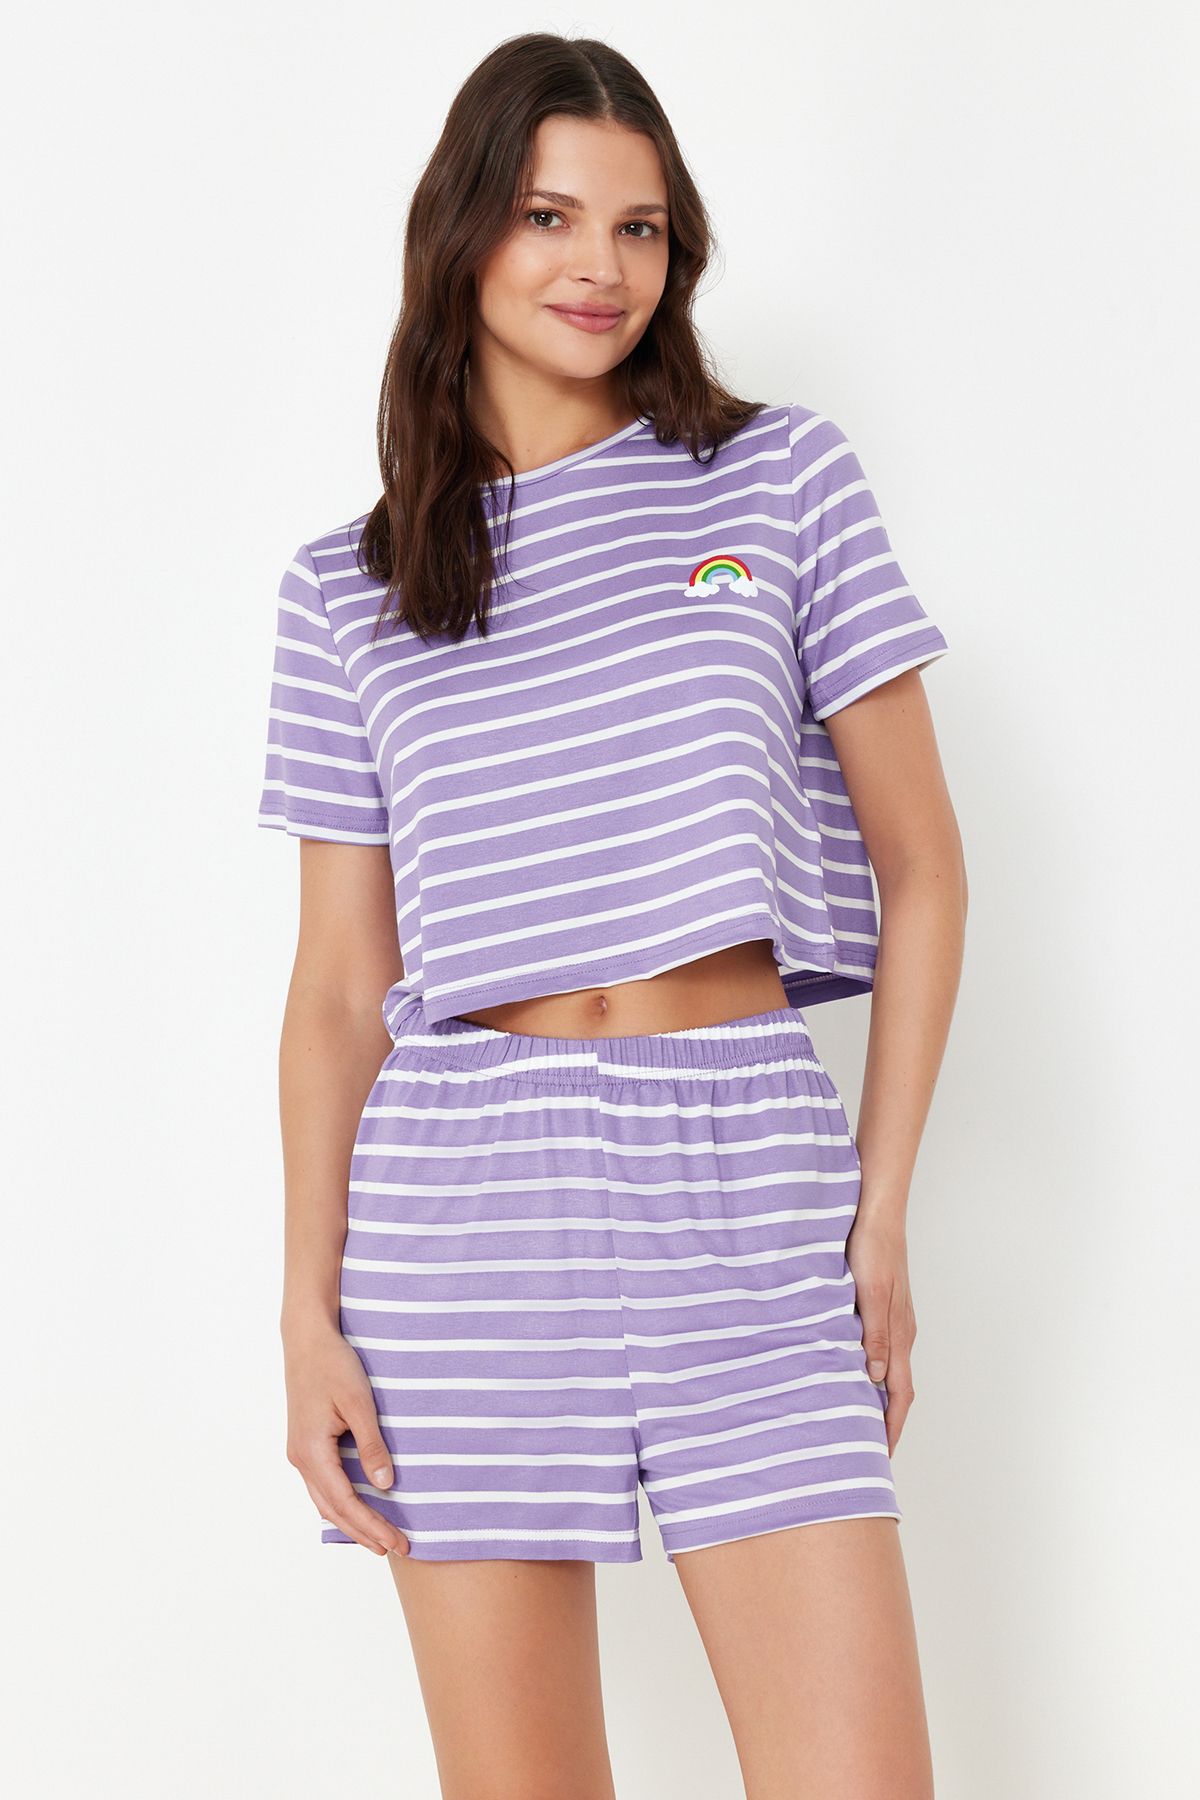 TRENDYOLMİLLA Lila Gökkuşağı Baskılı T-shirt-Şort Örme Pijama Takımı THMSS20PT0230